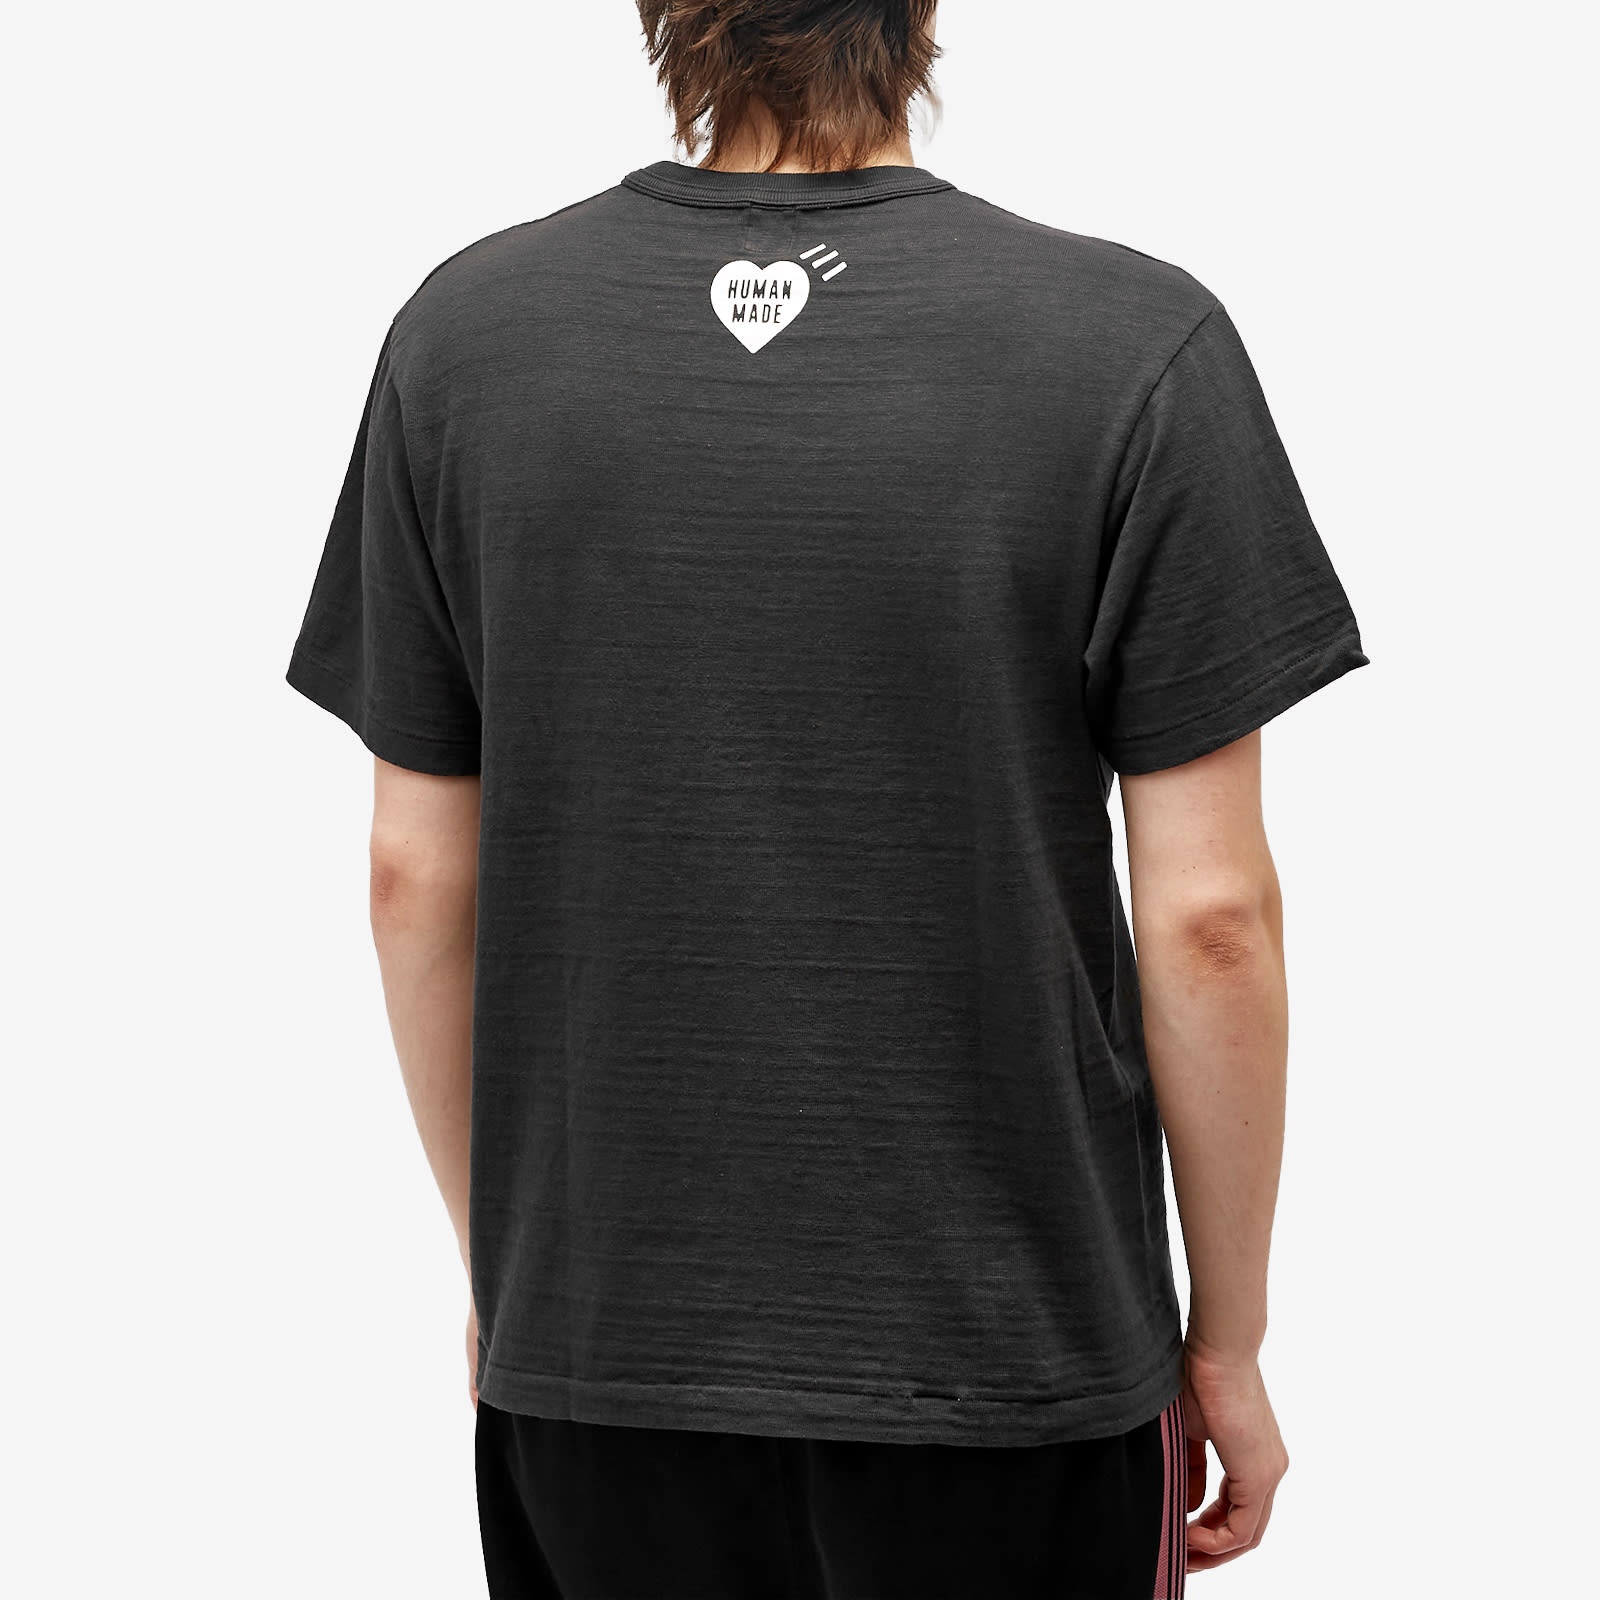 Human Made Drawn Hearts T-Shirt - 3